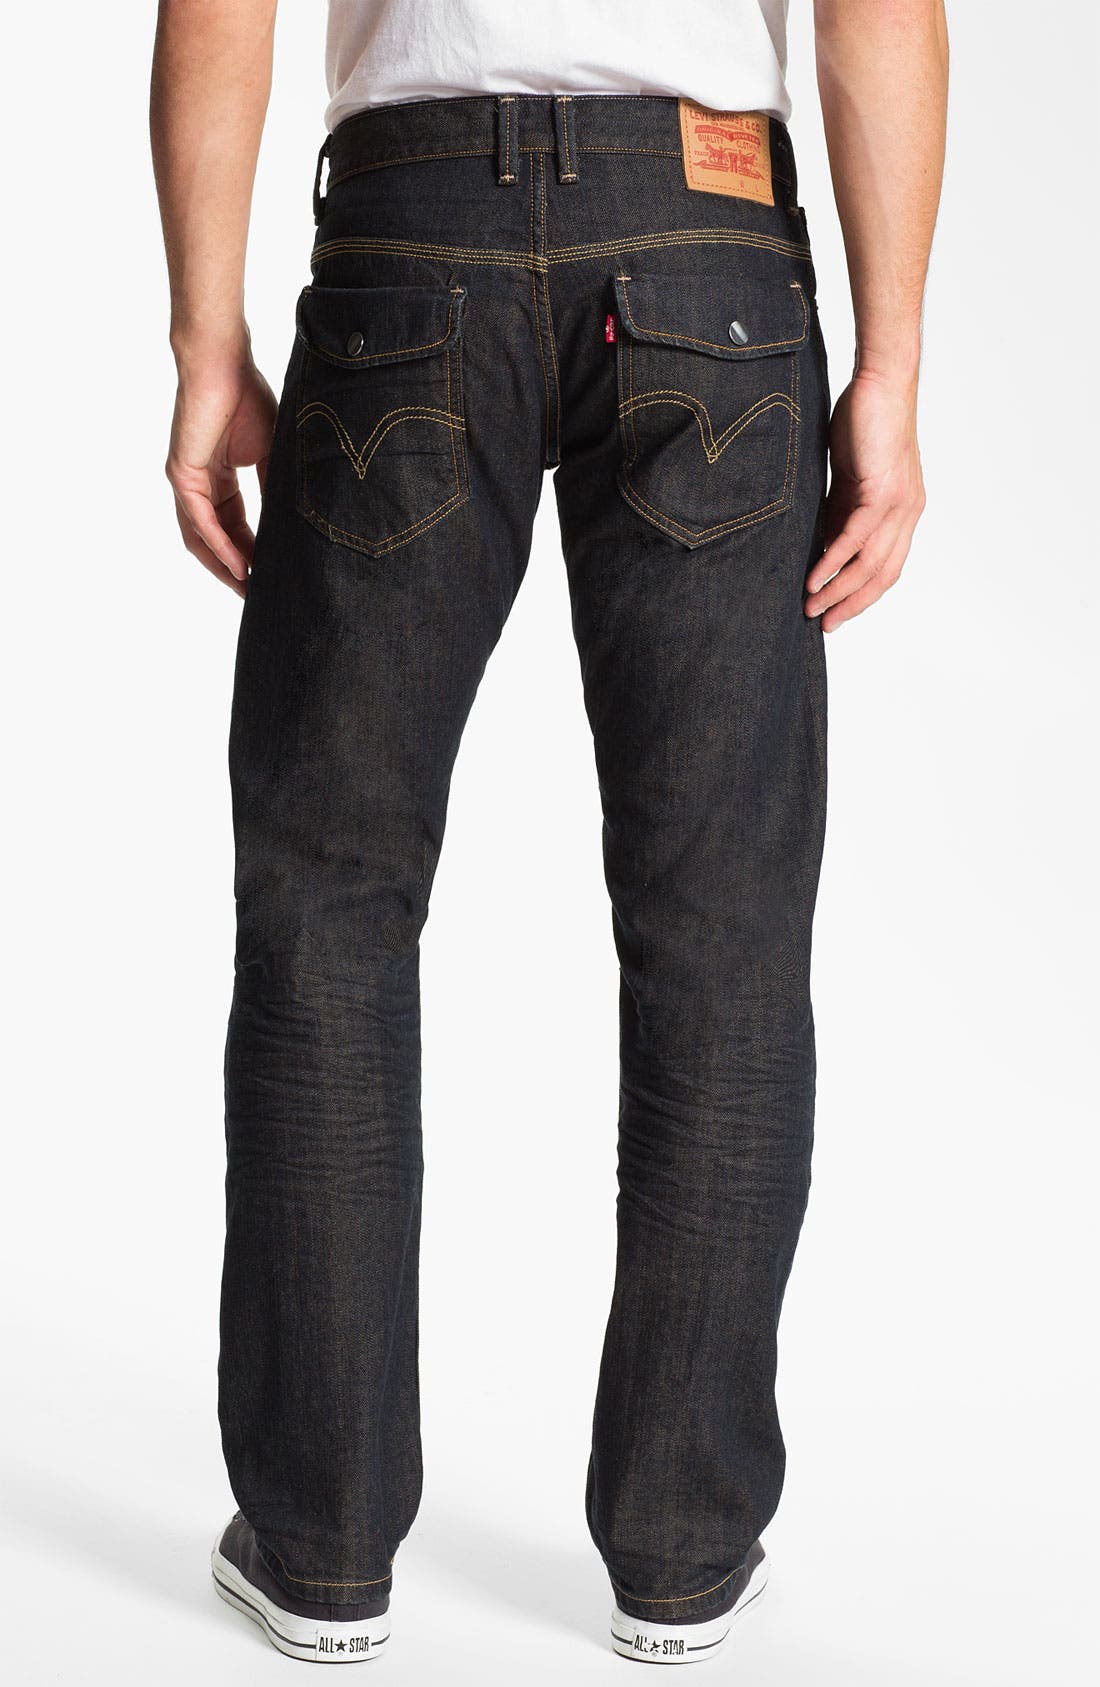 levis flap pocket jeans mens